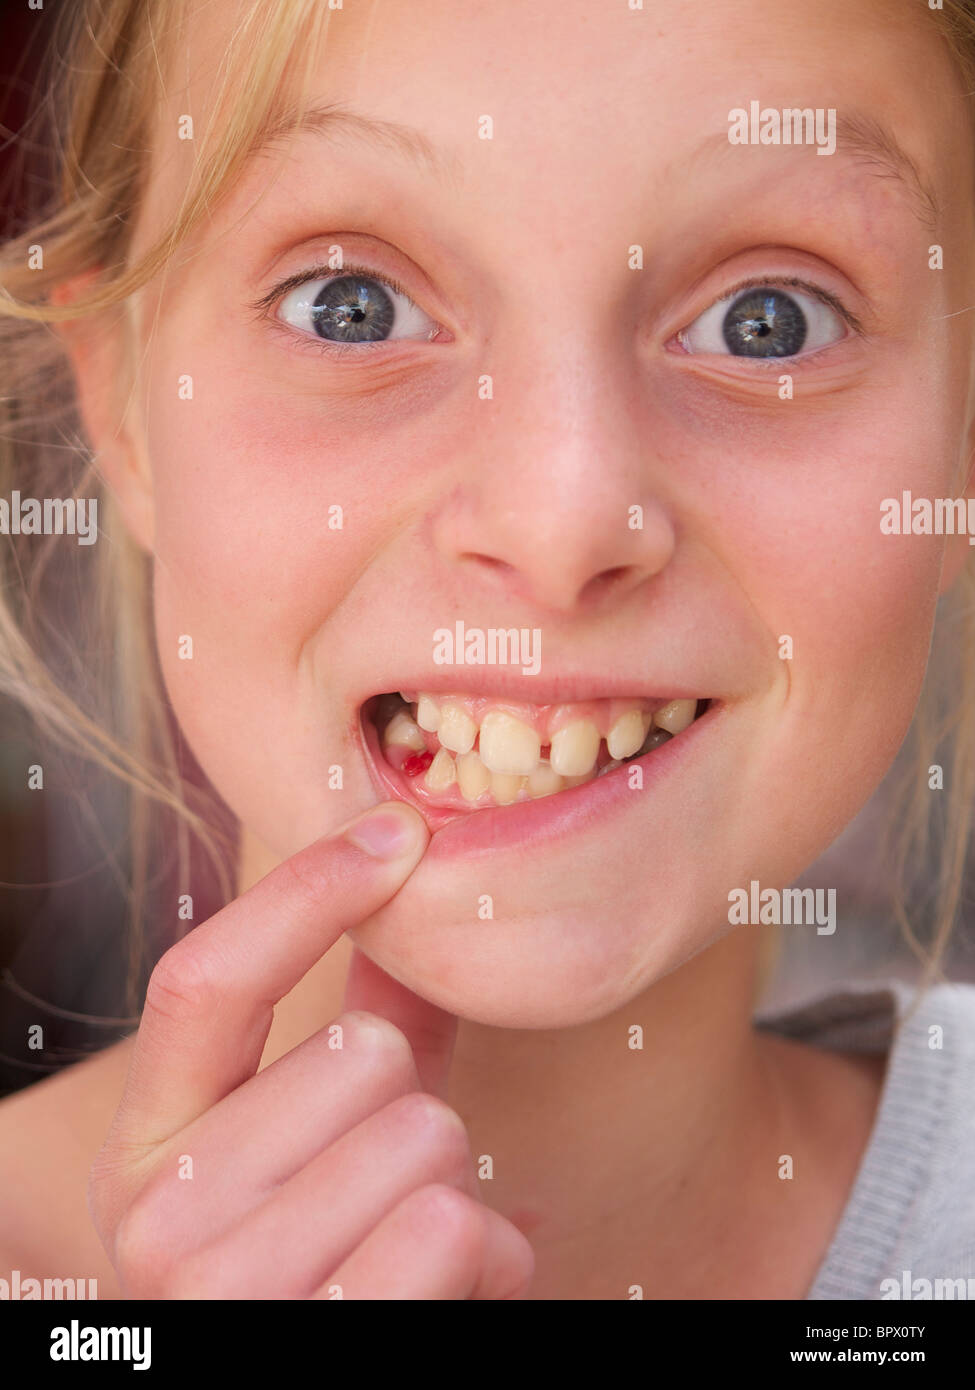 Mädchen zeigt ihre molare 10 Jahre alt, den Austausch von Zähnen Spaß lustig fehlt ihr Name ist Lara Stockfoto